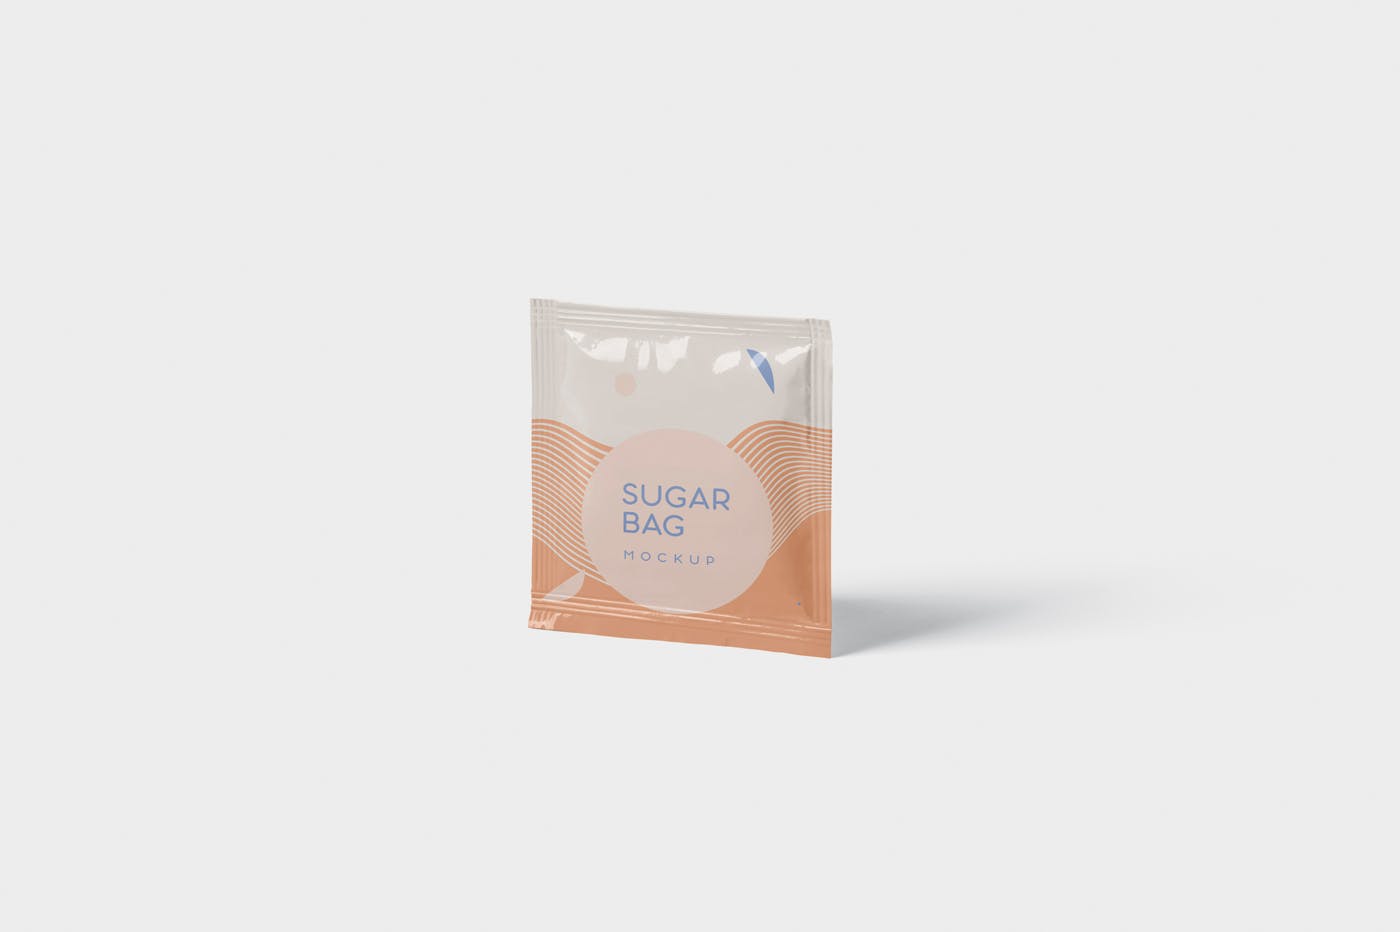 盐袋糖袋包装设计效果图第一素材精选 Salt OR Sugar Bag Mockup – Square Shaped插图(2)